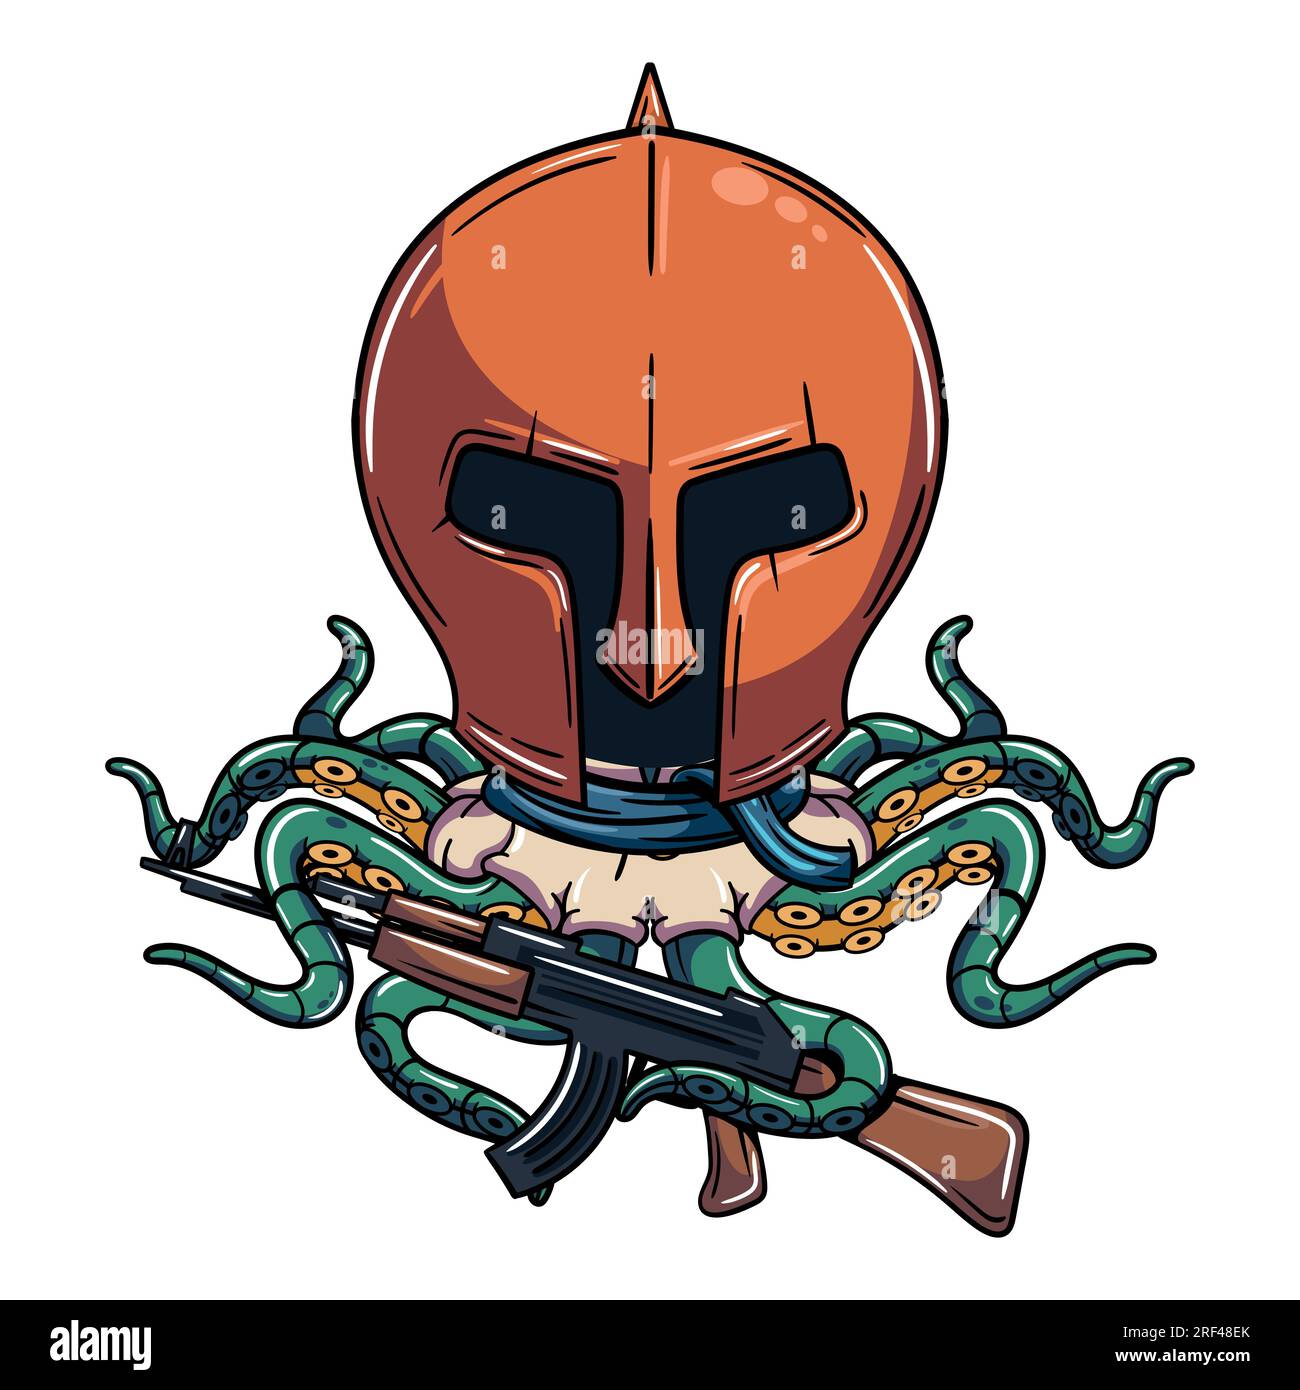 Personnage de poulpe cyborg de dessin animé portant un casque médiéval avec fusil de chasse. Illustration pour la fantaisie, la science-fiction et la bande dessinée d'aventure Illustration de Vecteur